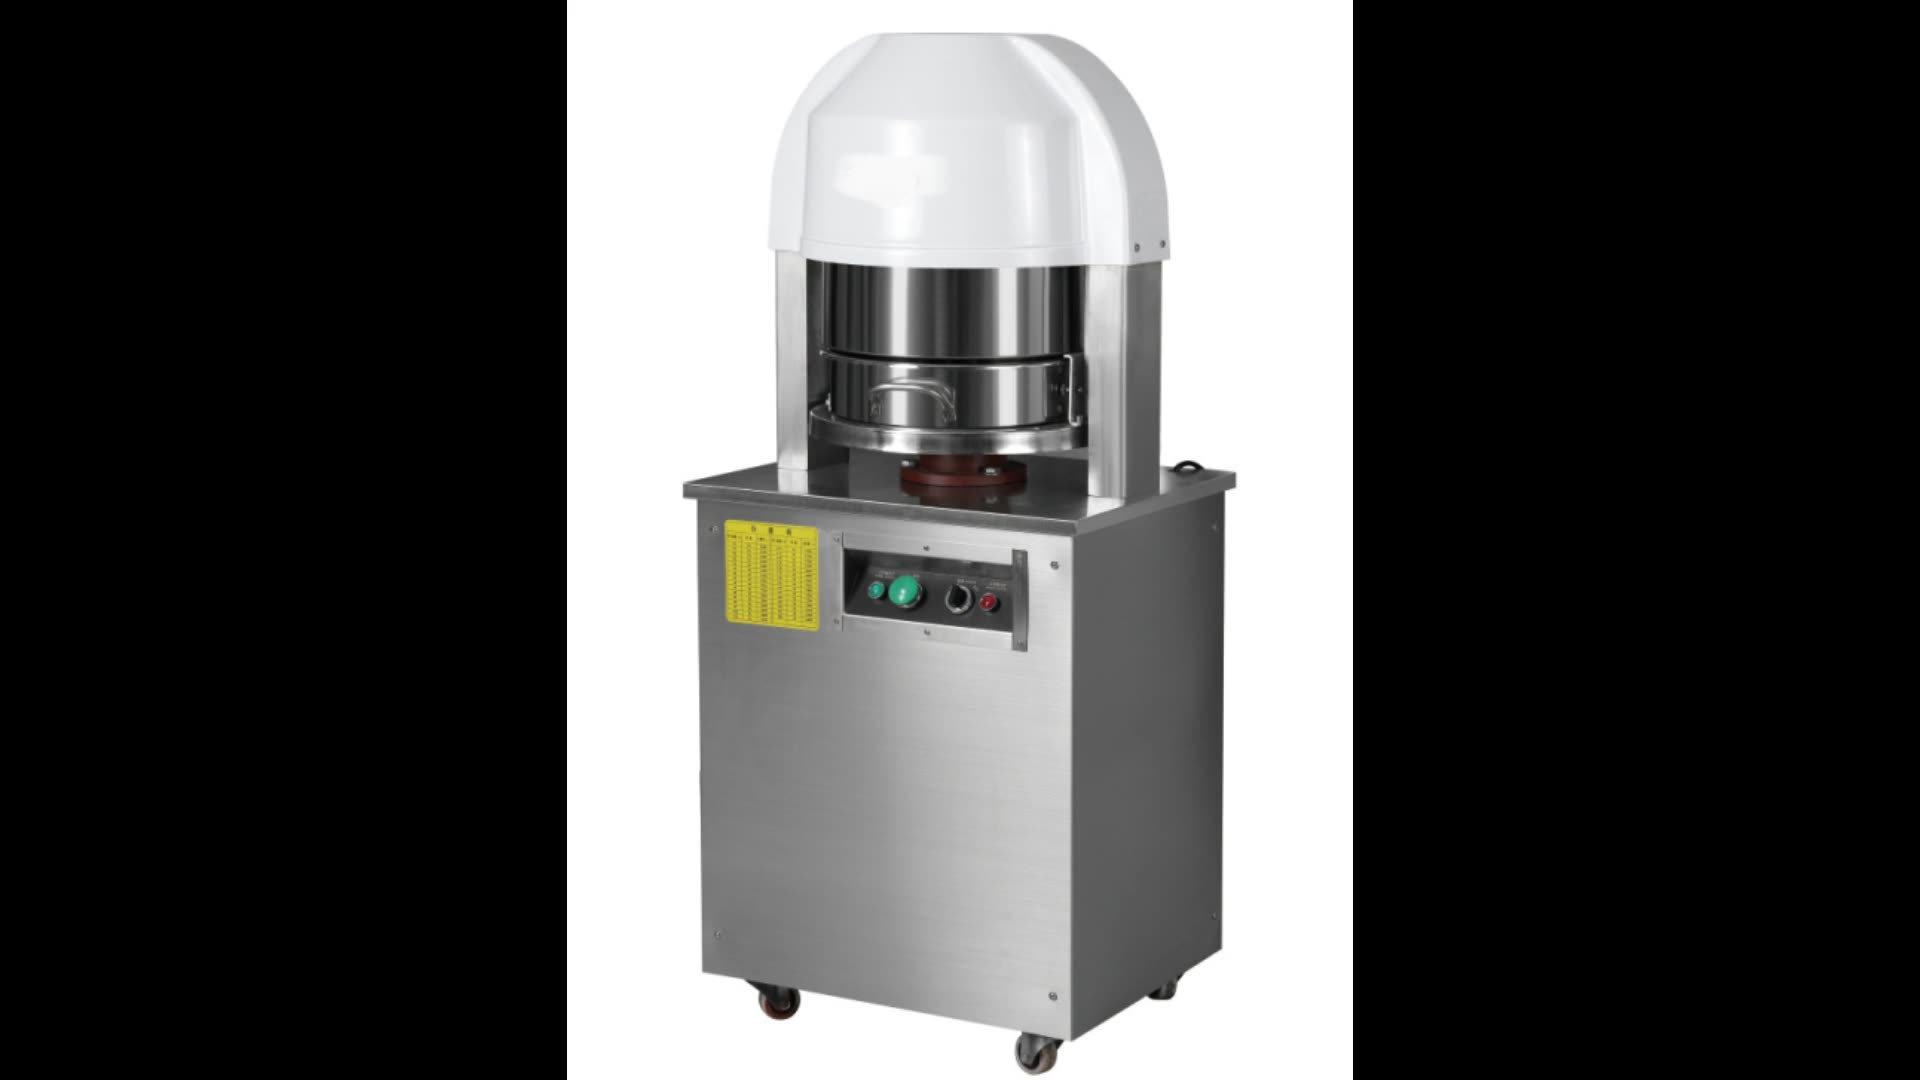 GLEAD Commercial Kitchen Equipment Automatic Electric Teig -Teiler für Brot abschneiden 30 36 Stücke Hochwertiger wirtschaftlicher Preis1